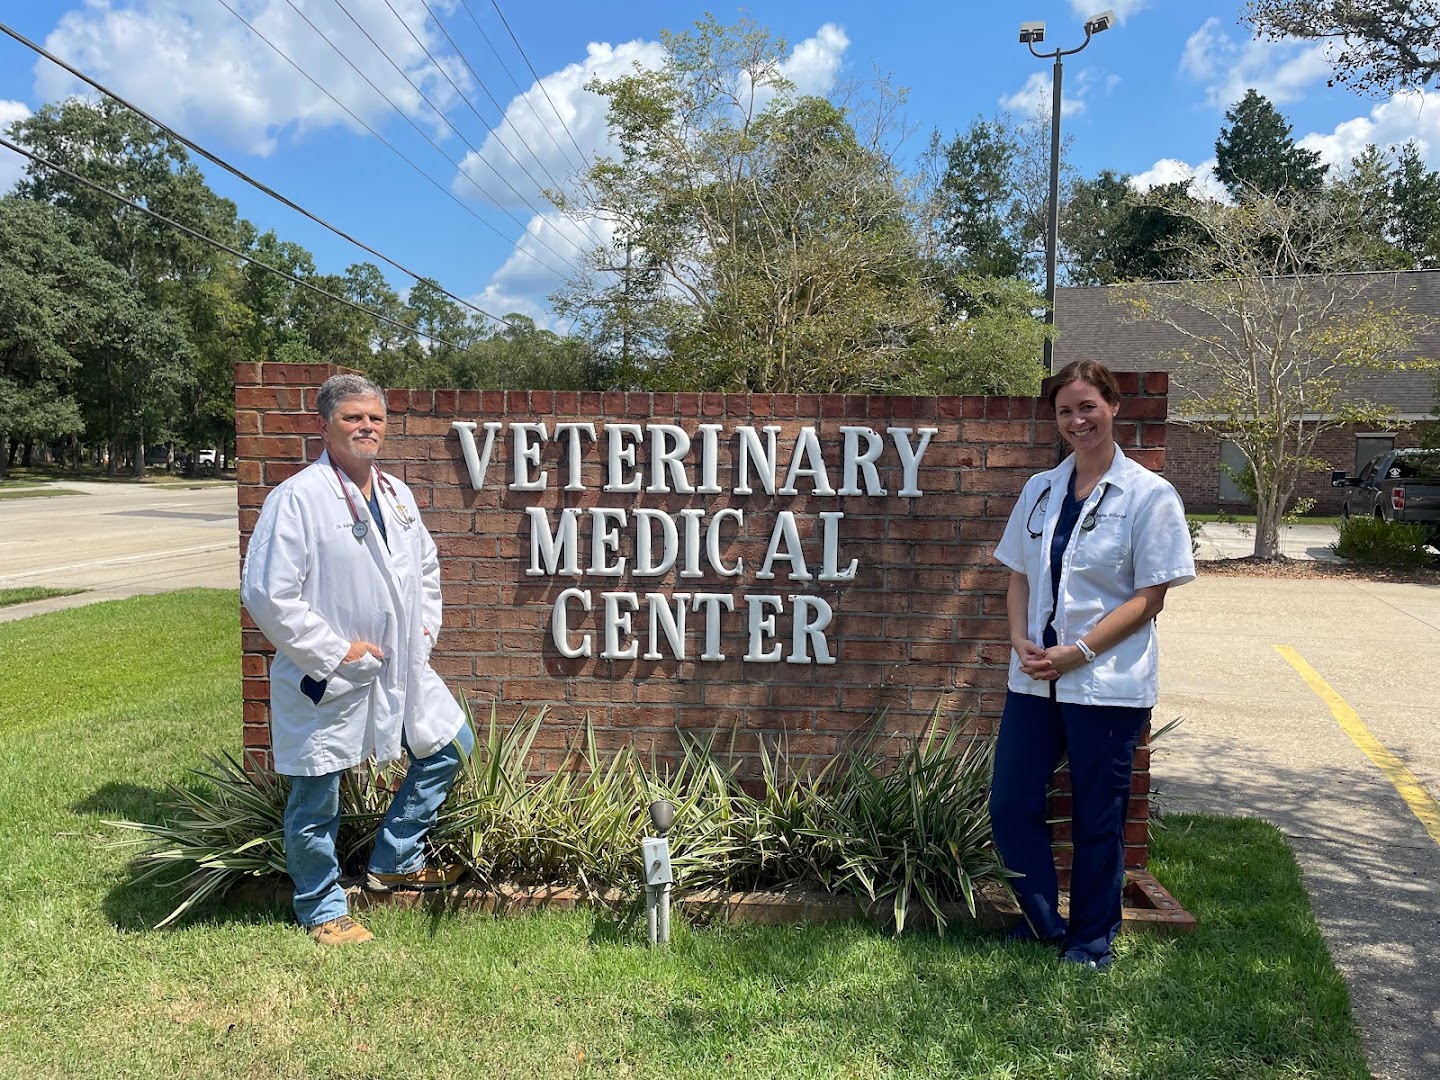 Veterinary Medical Center